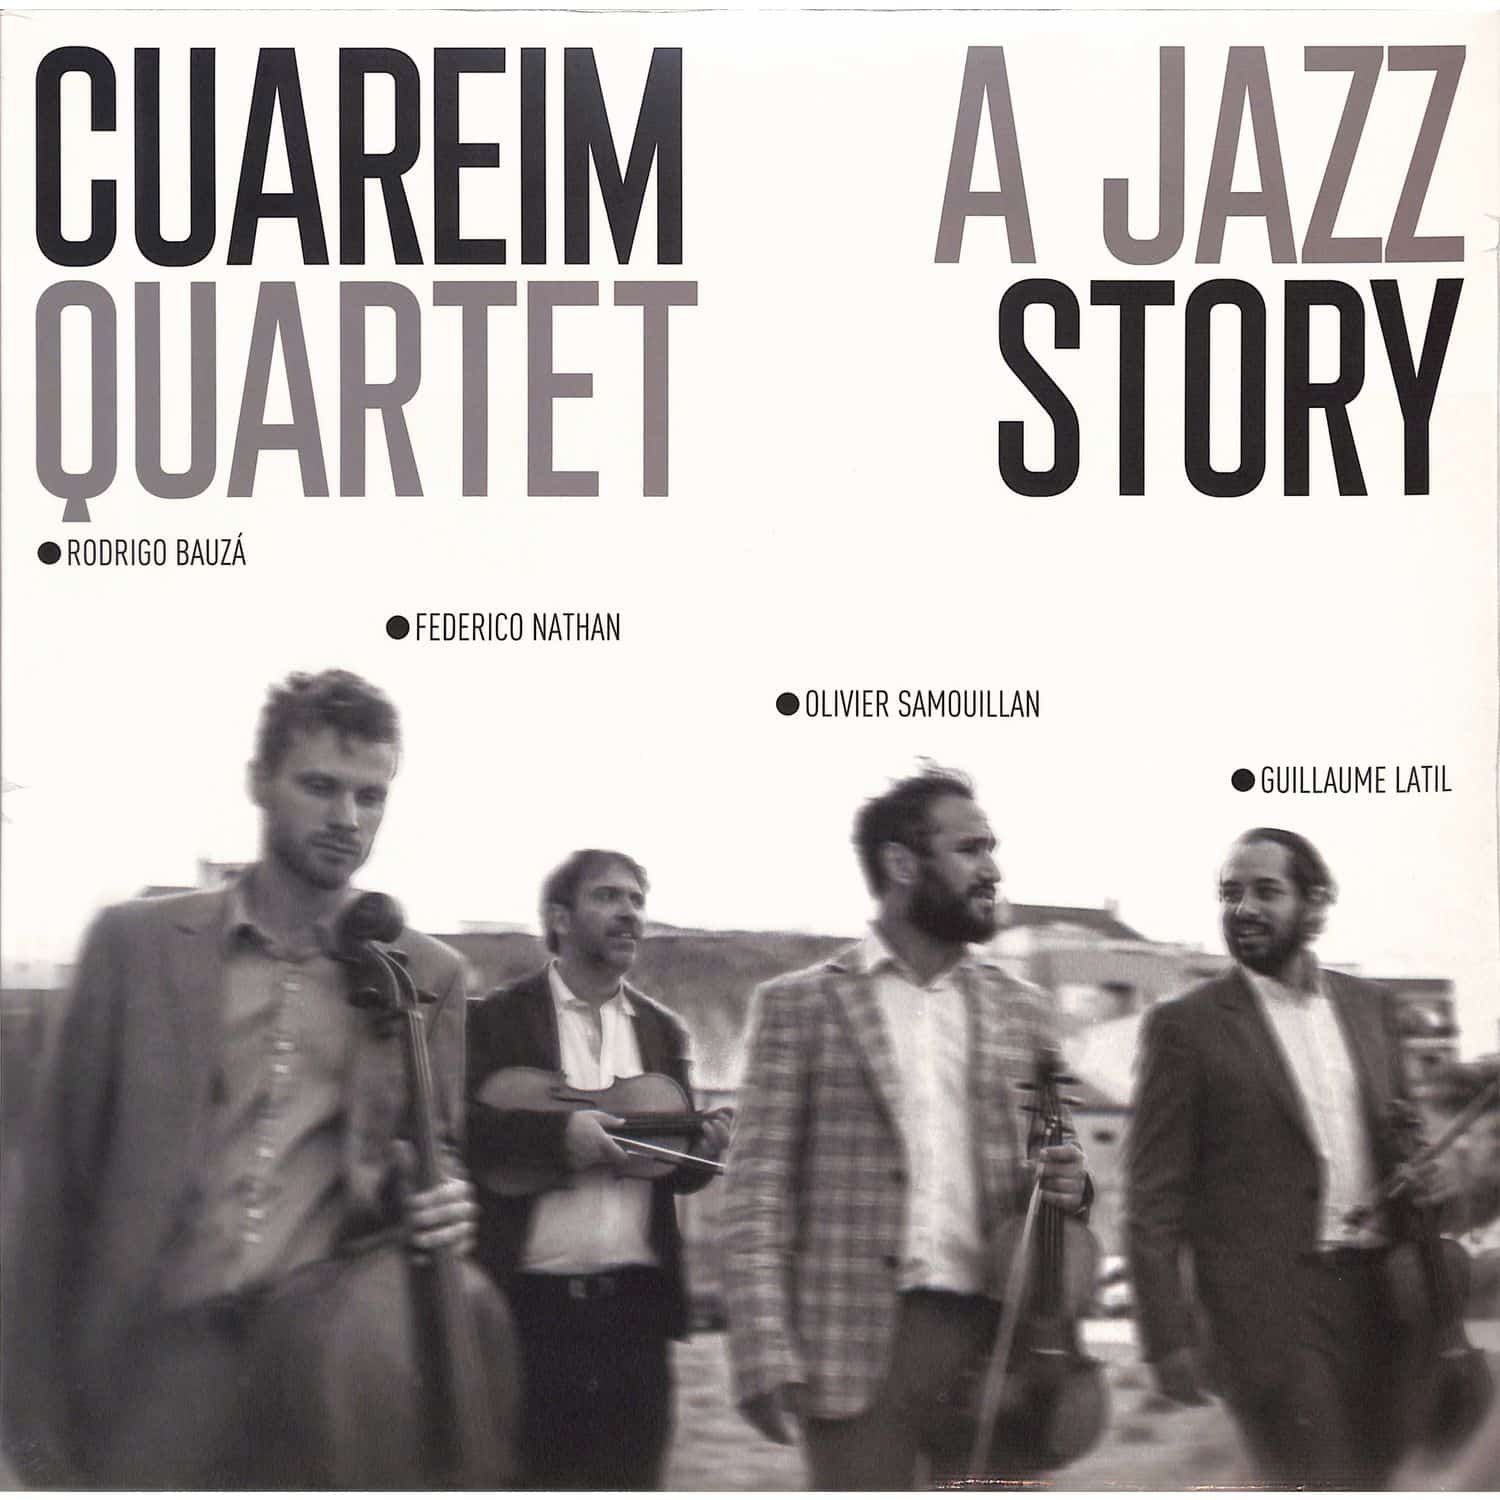 Cuareim Quartet - A JAZZ STORY 